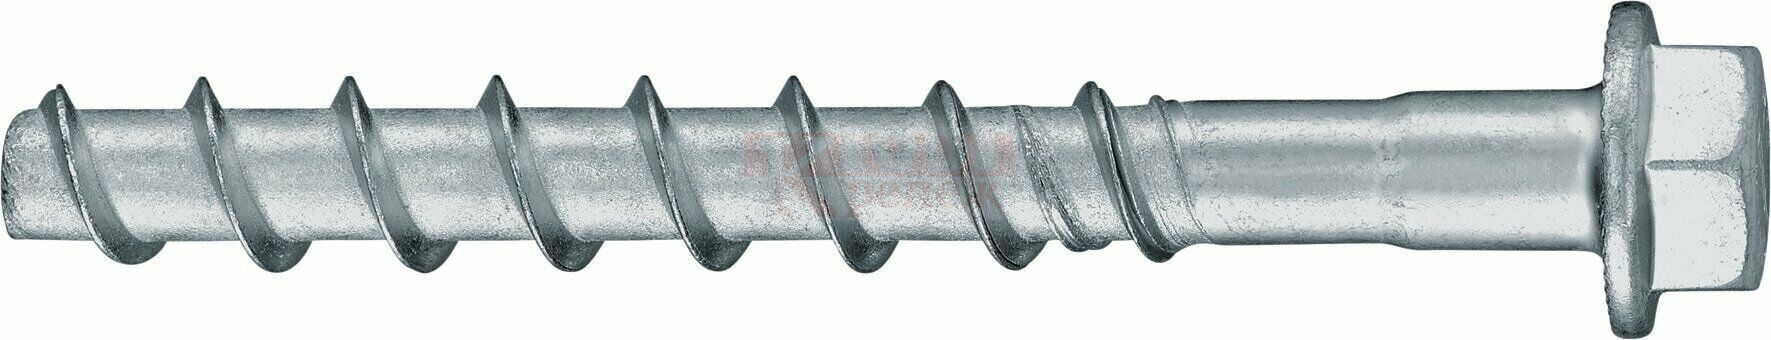 HUS2-H 8/10 8x75 Анкер-шуруп HILTI для бетона оц. сталь, 8x75 25/10 мм